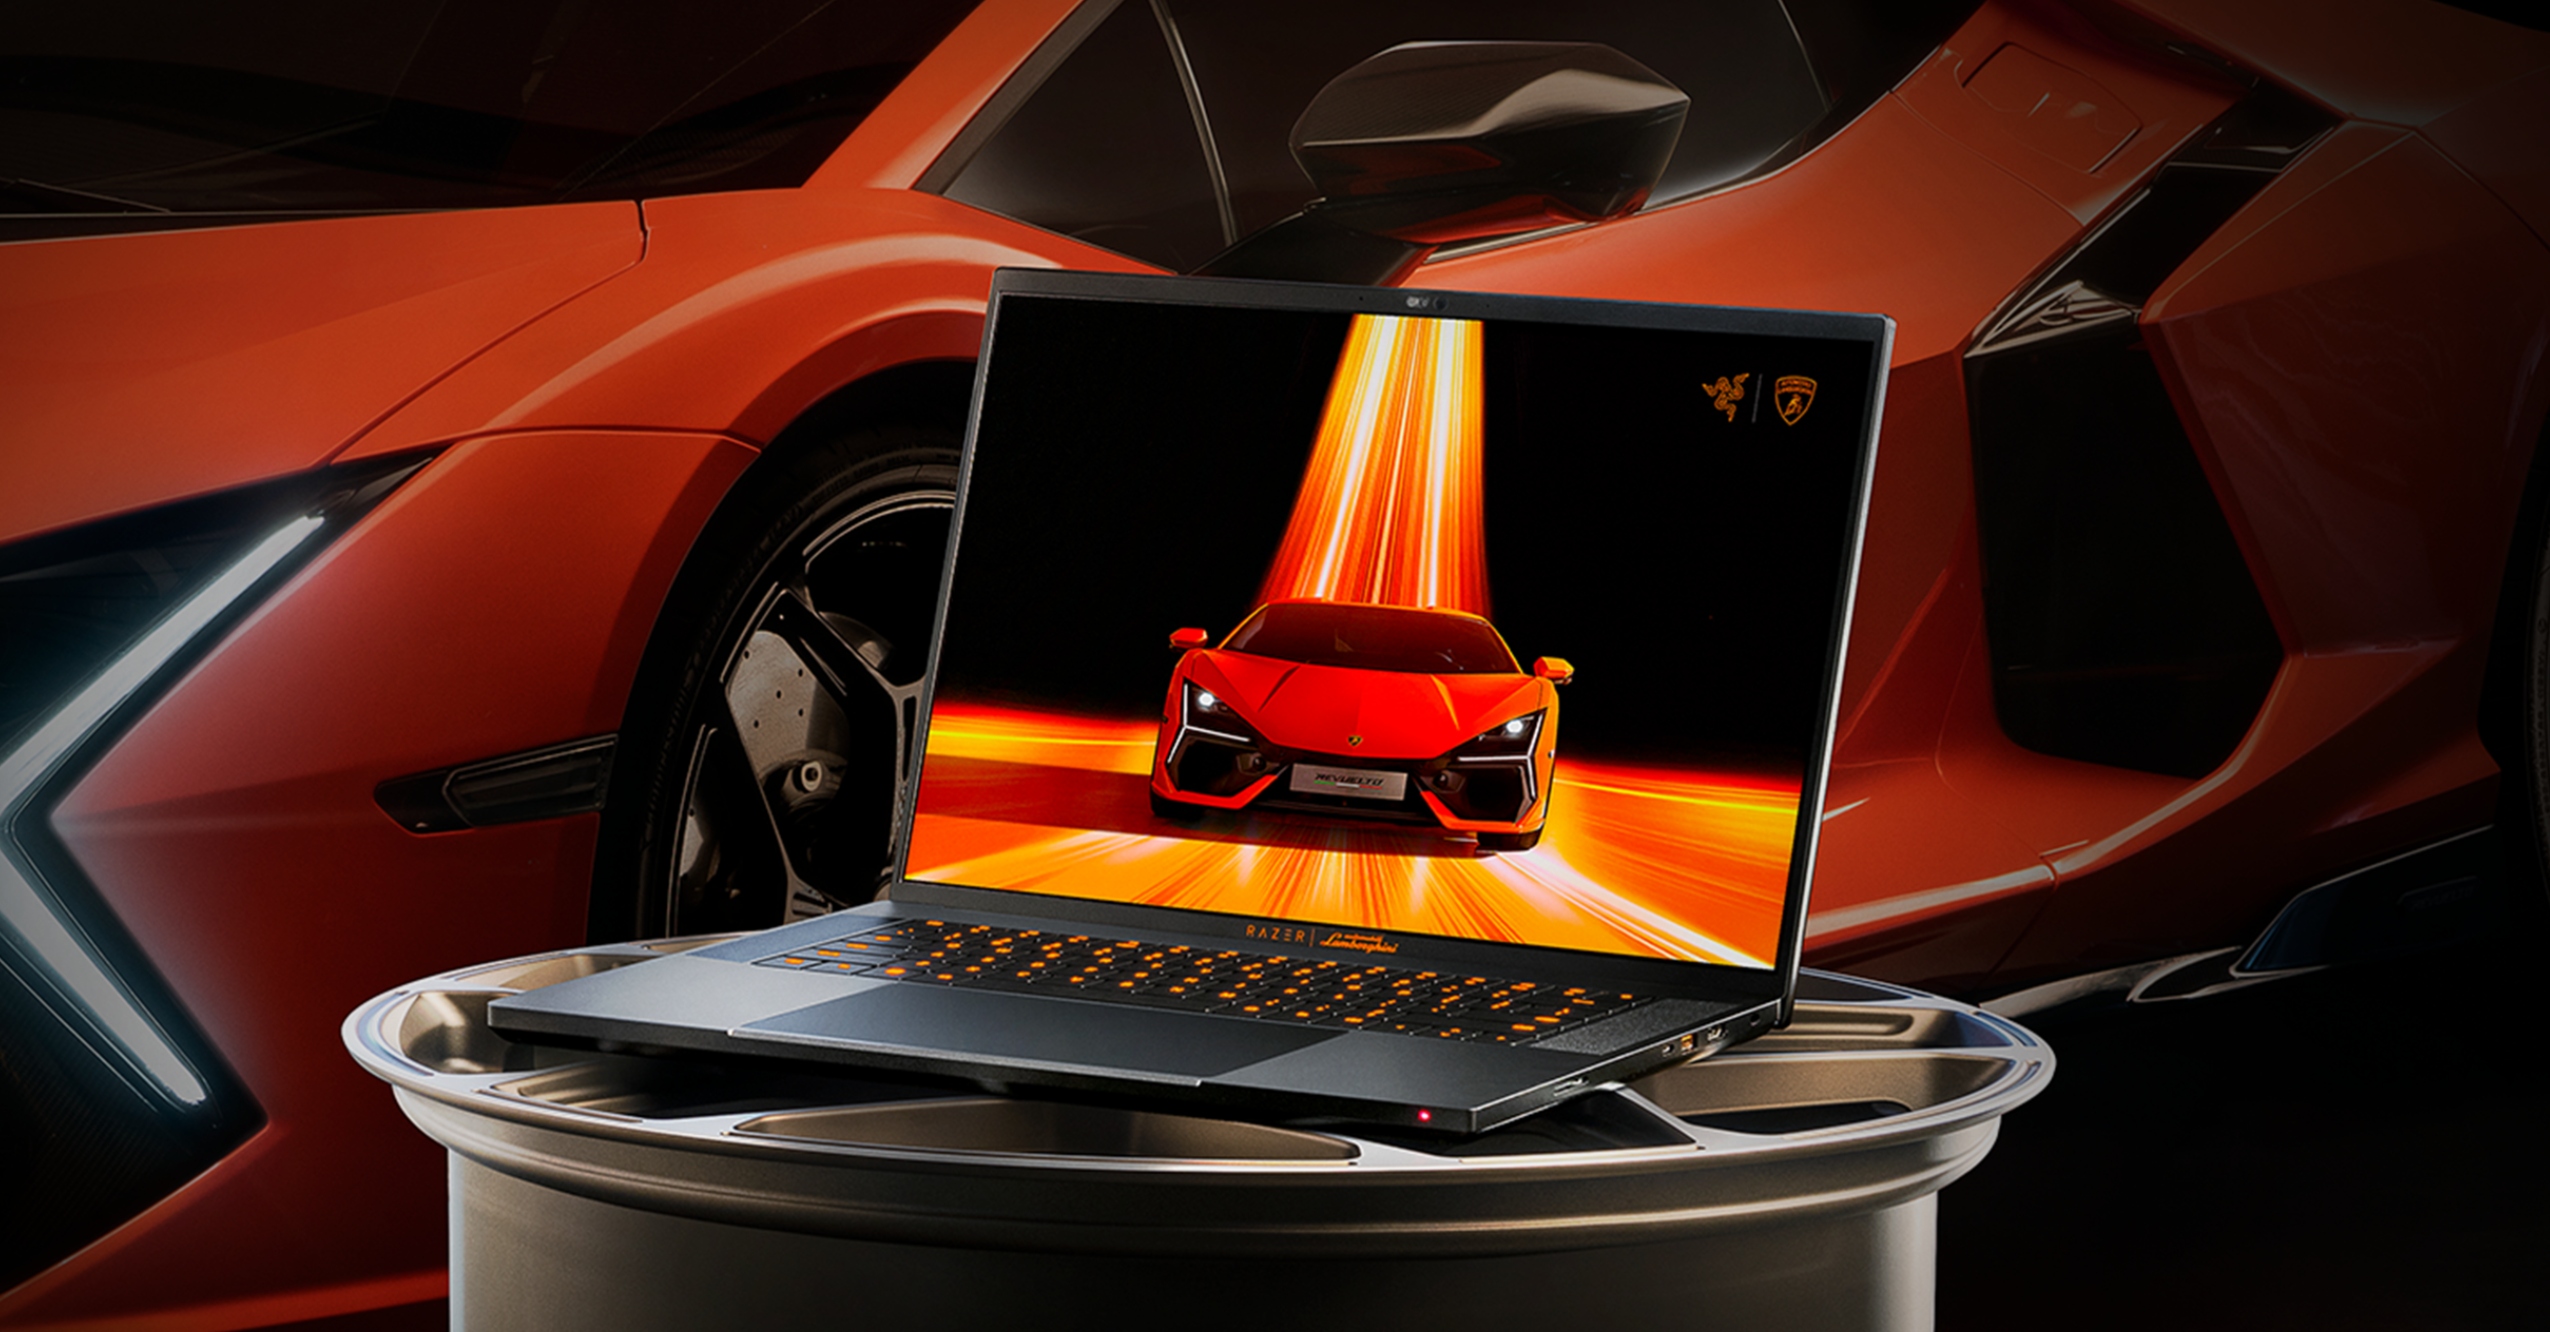 Lamborghini X Razer Promo Lamborghini &Amp; Razer Join Forces For $5,000 Gaming Laptop